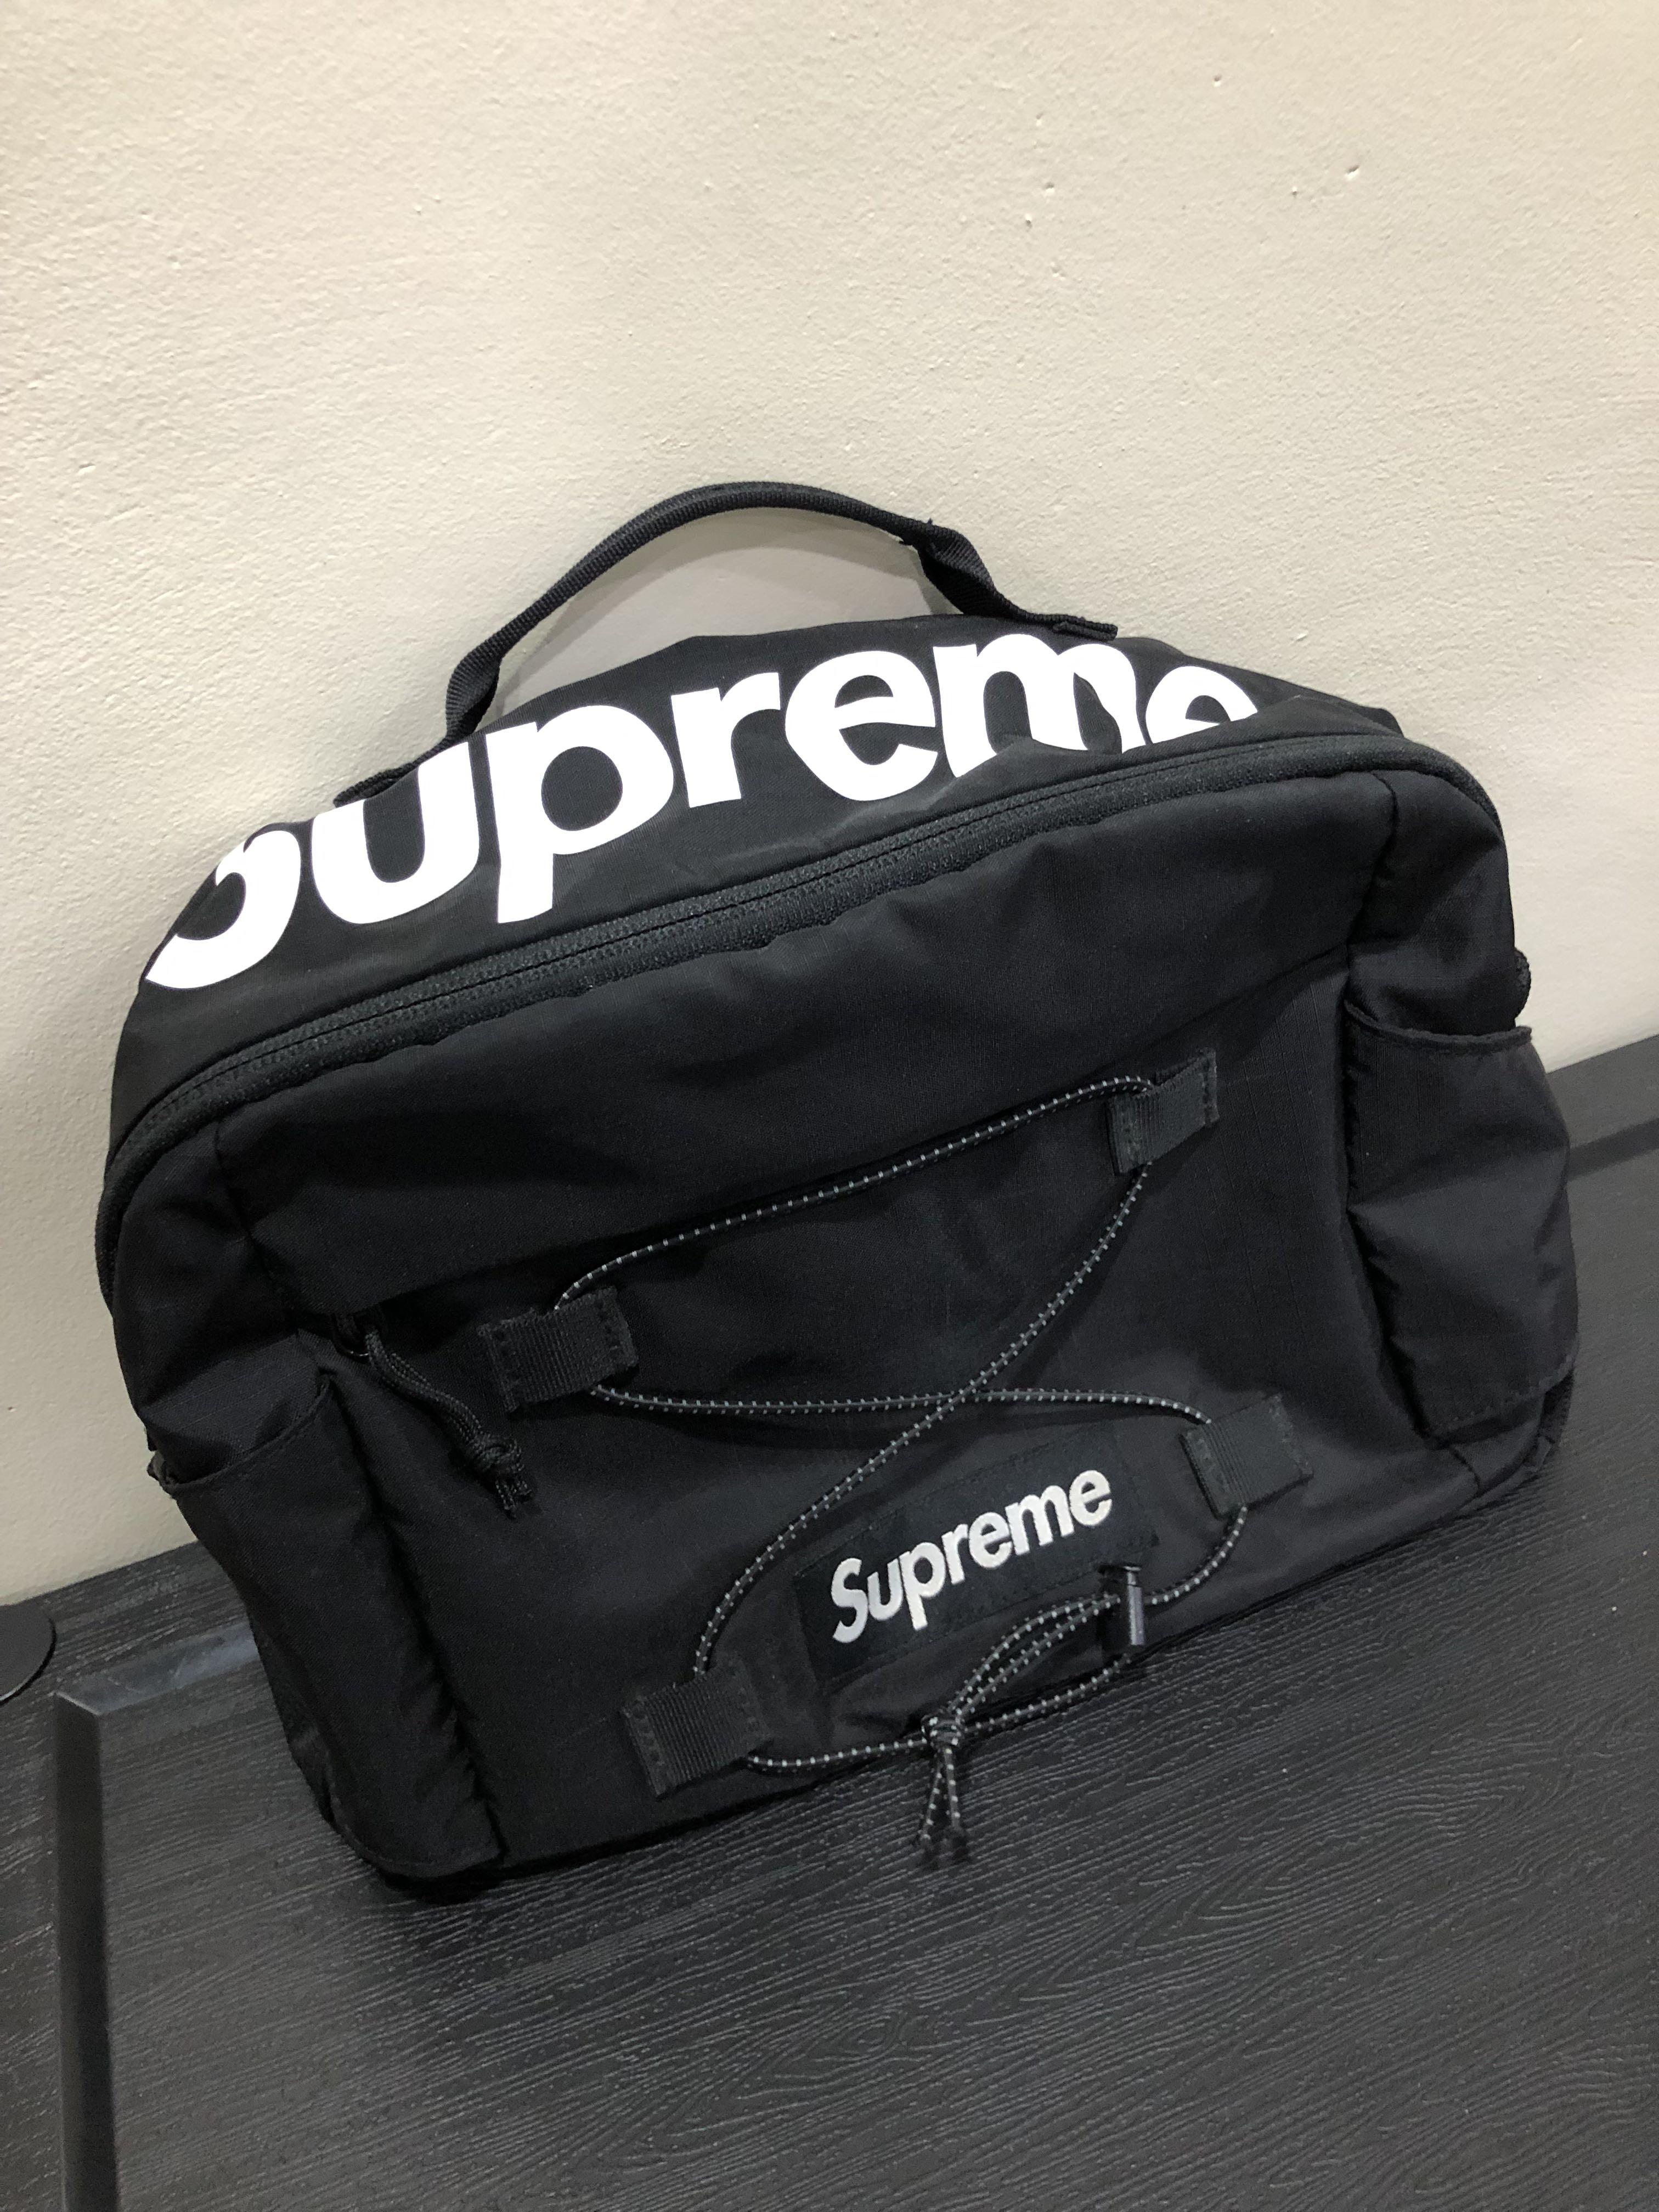 supreme waist bag ss17